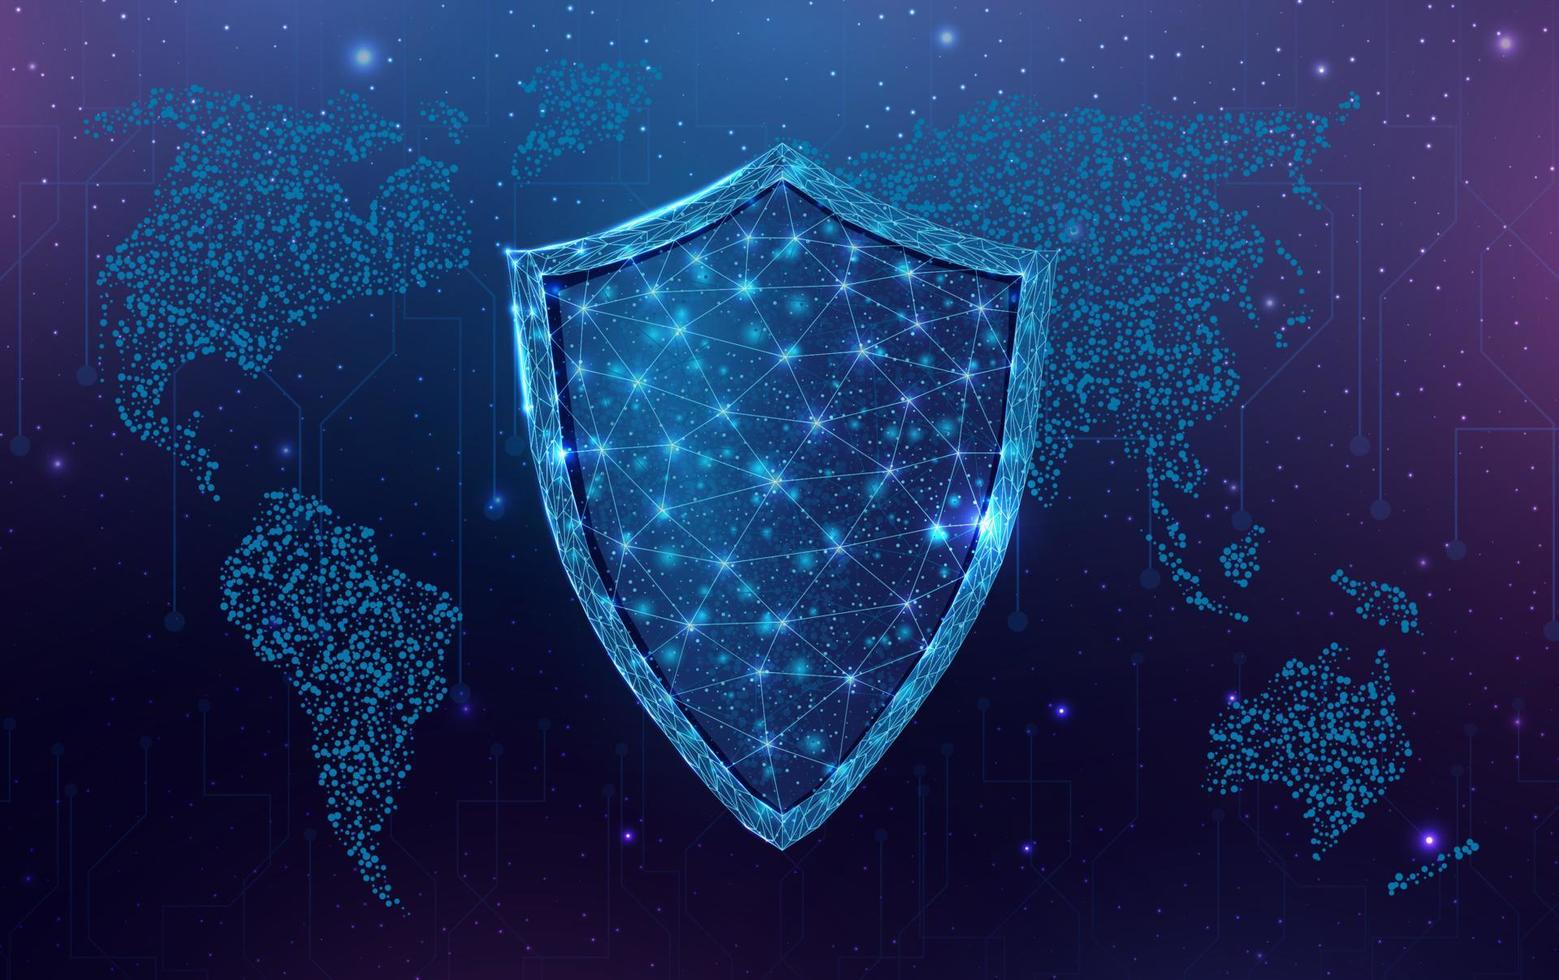 escudo poligonal de wireframe com mapa do globo. segurança cibernética, conceito de proteção mundial com guarda poli baixa brilhante. abstrato moderno futurista. ilustração vetorial. vetor